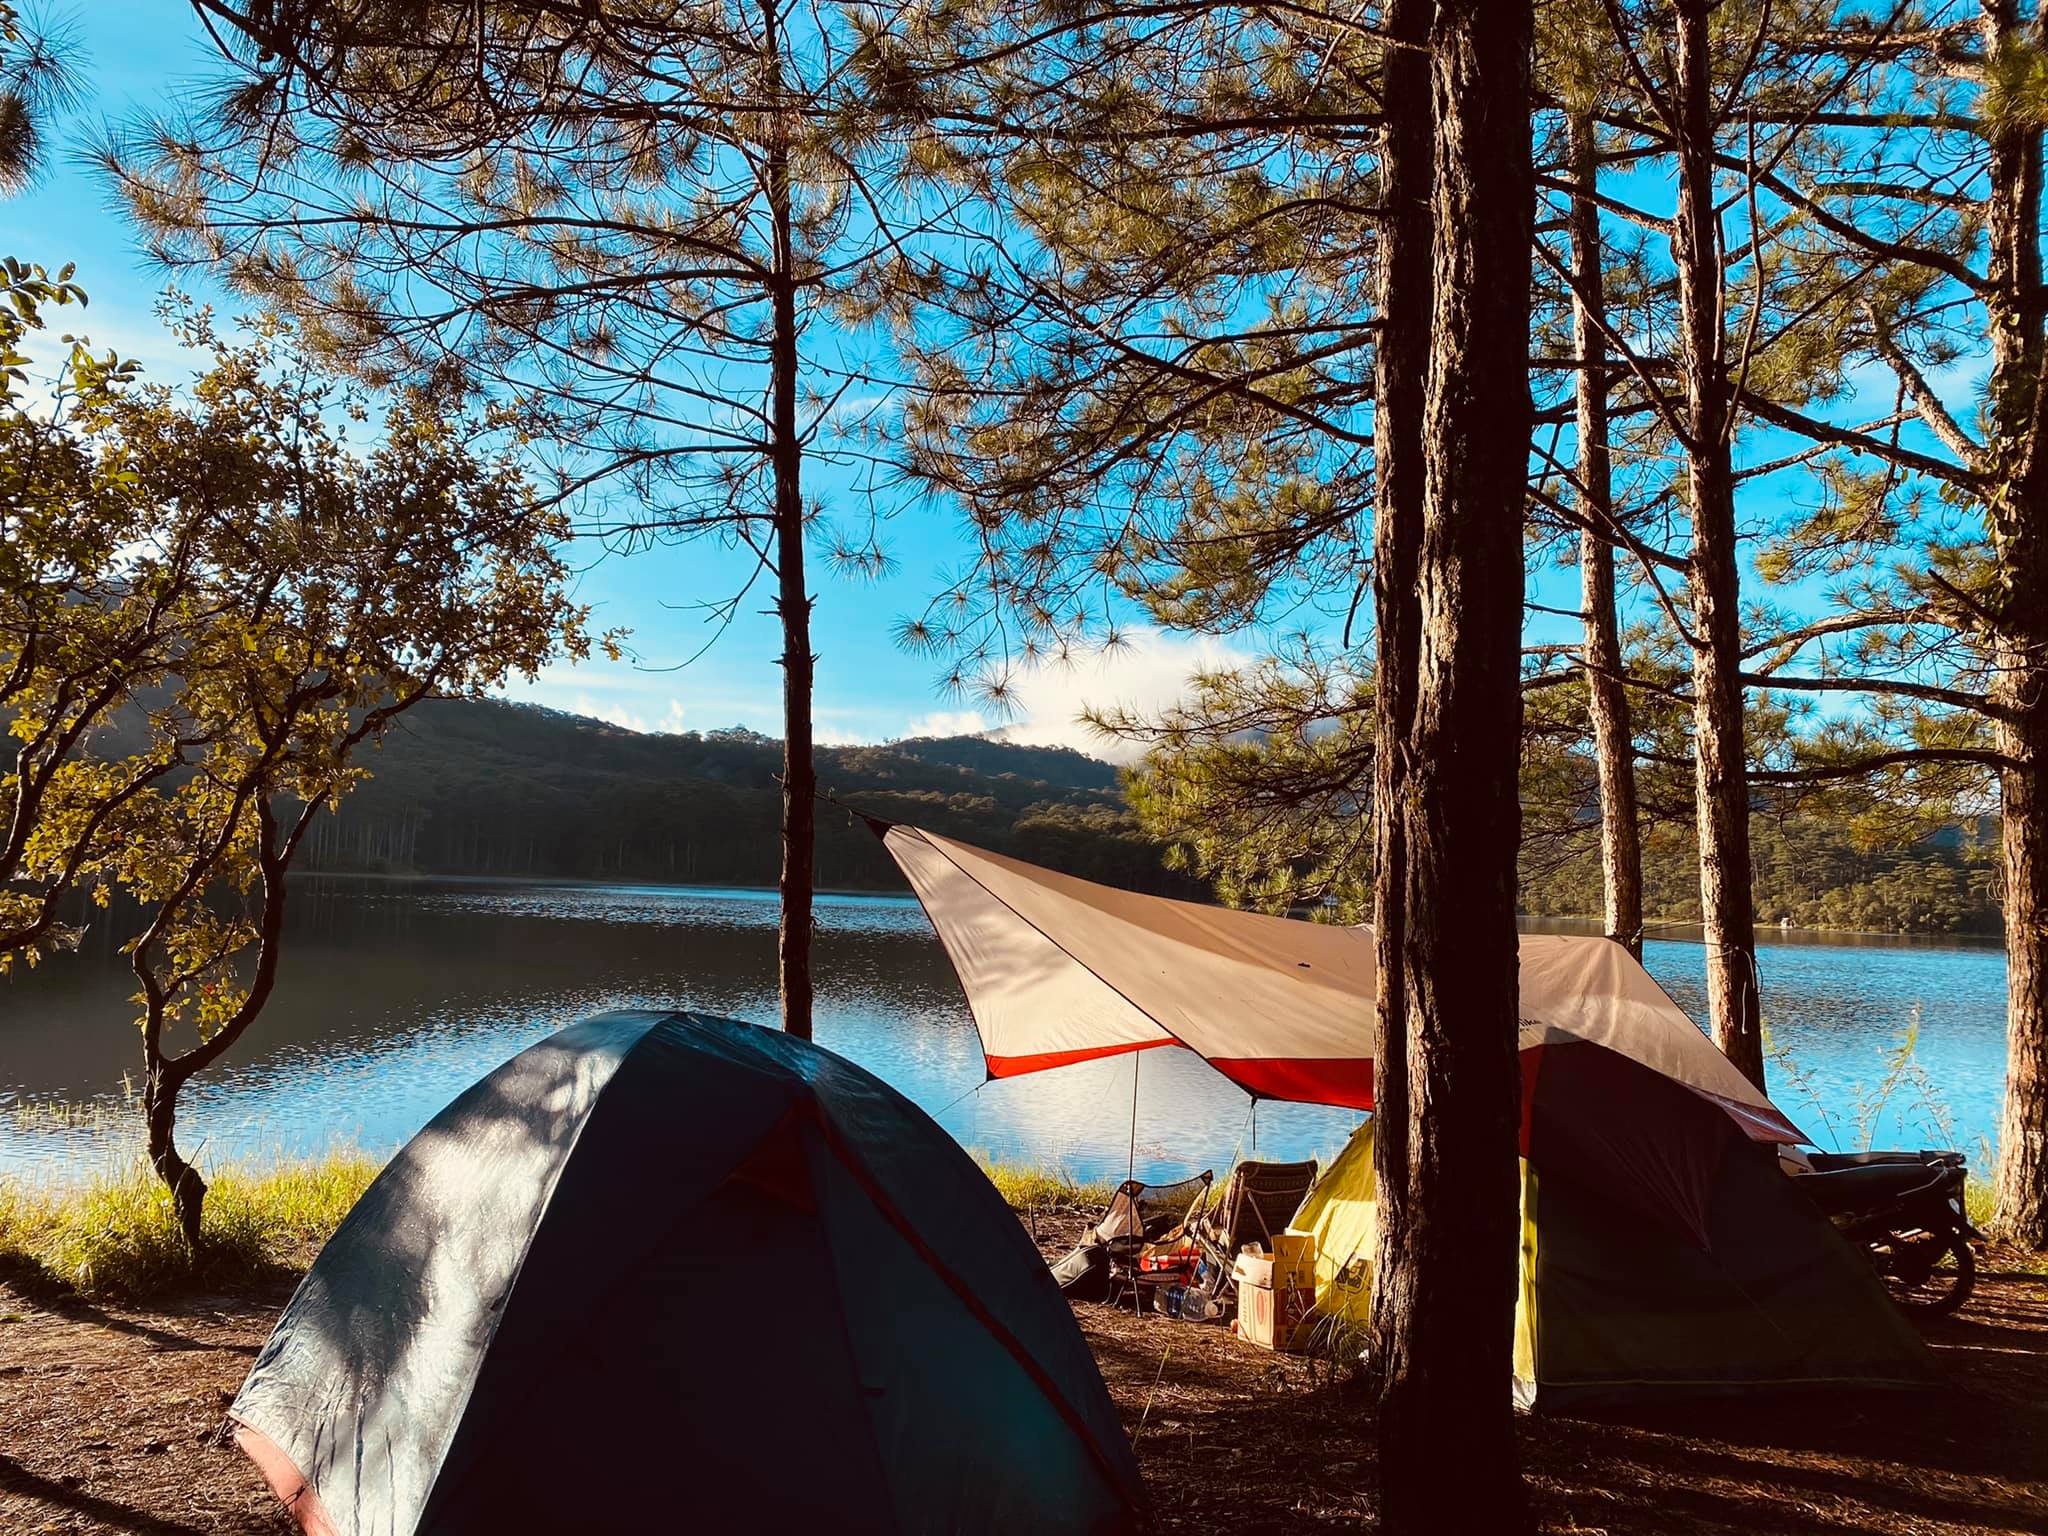 Cắm trại Hồ Tuyền Lâm Đà Lạt  – Đà Lạt